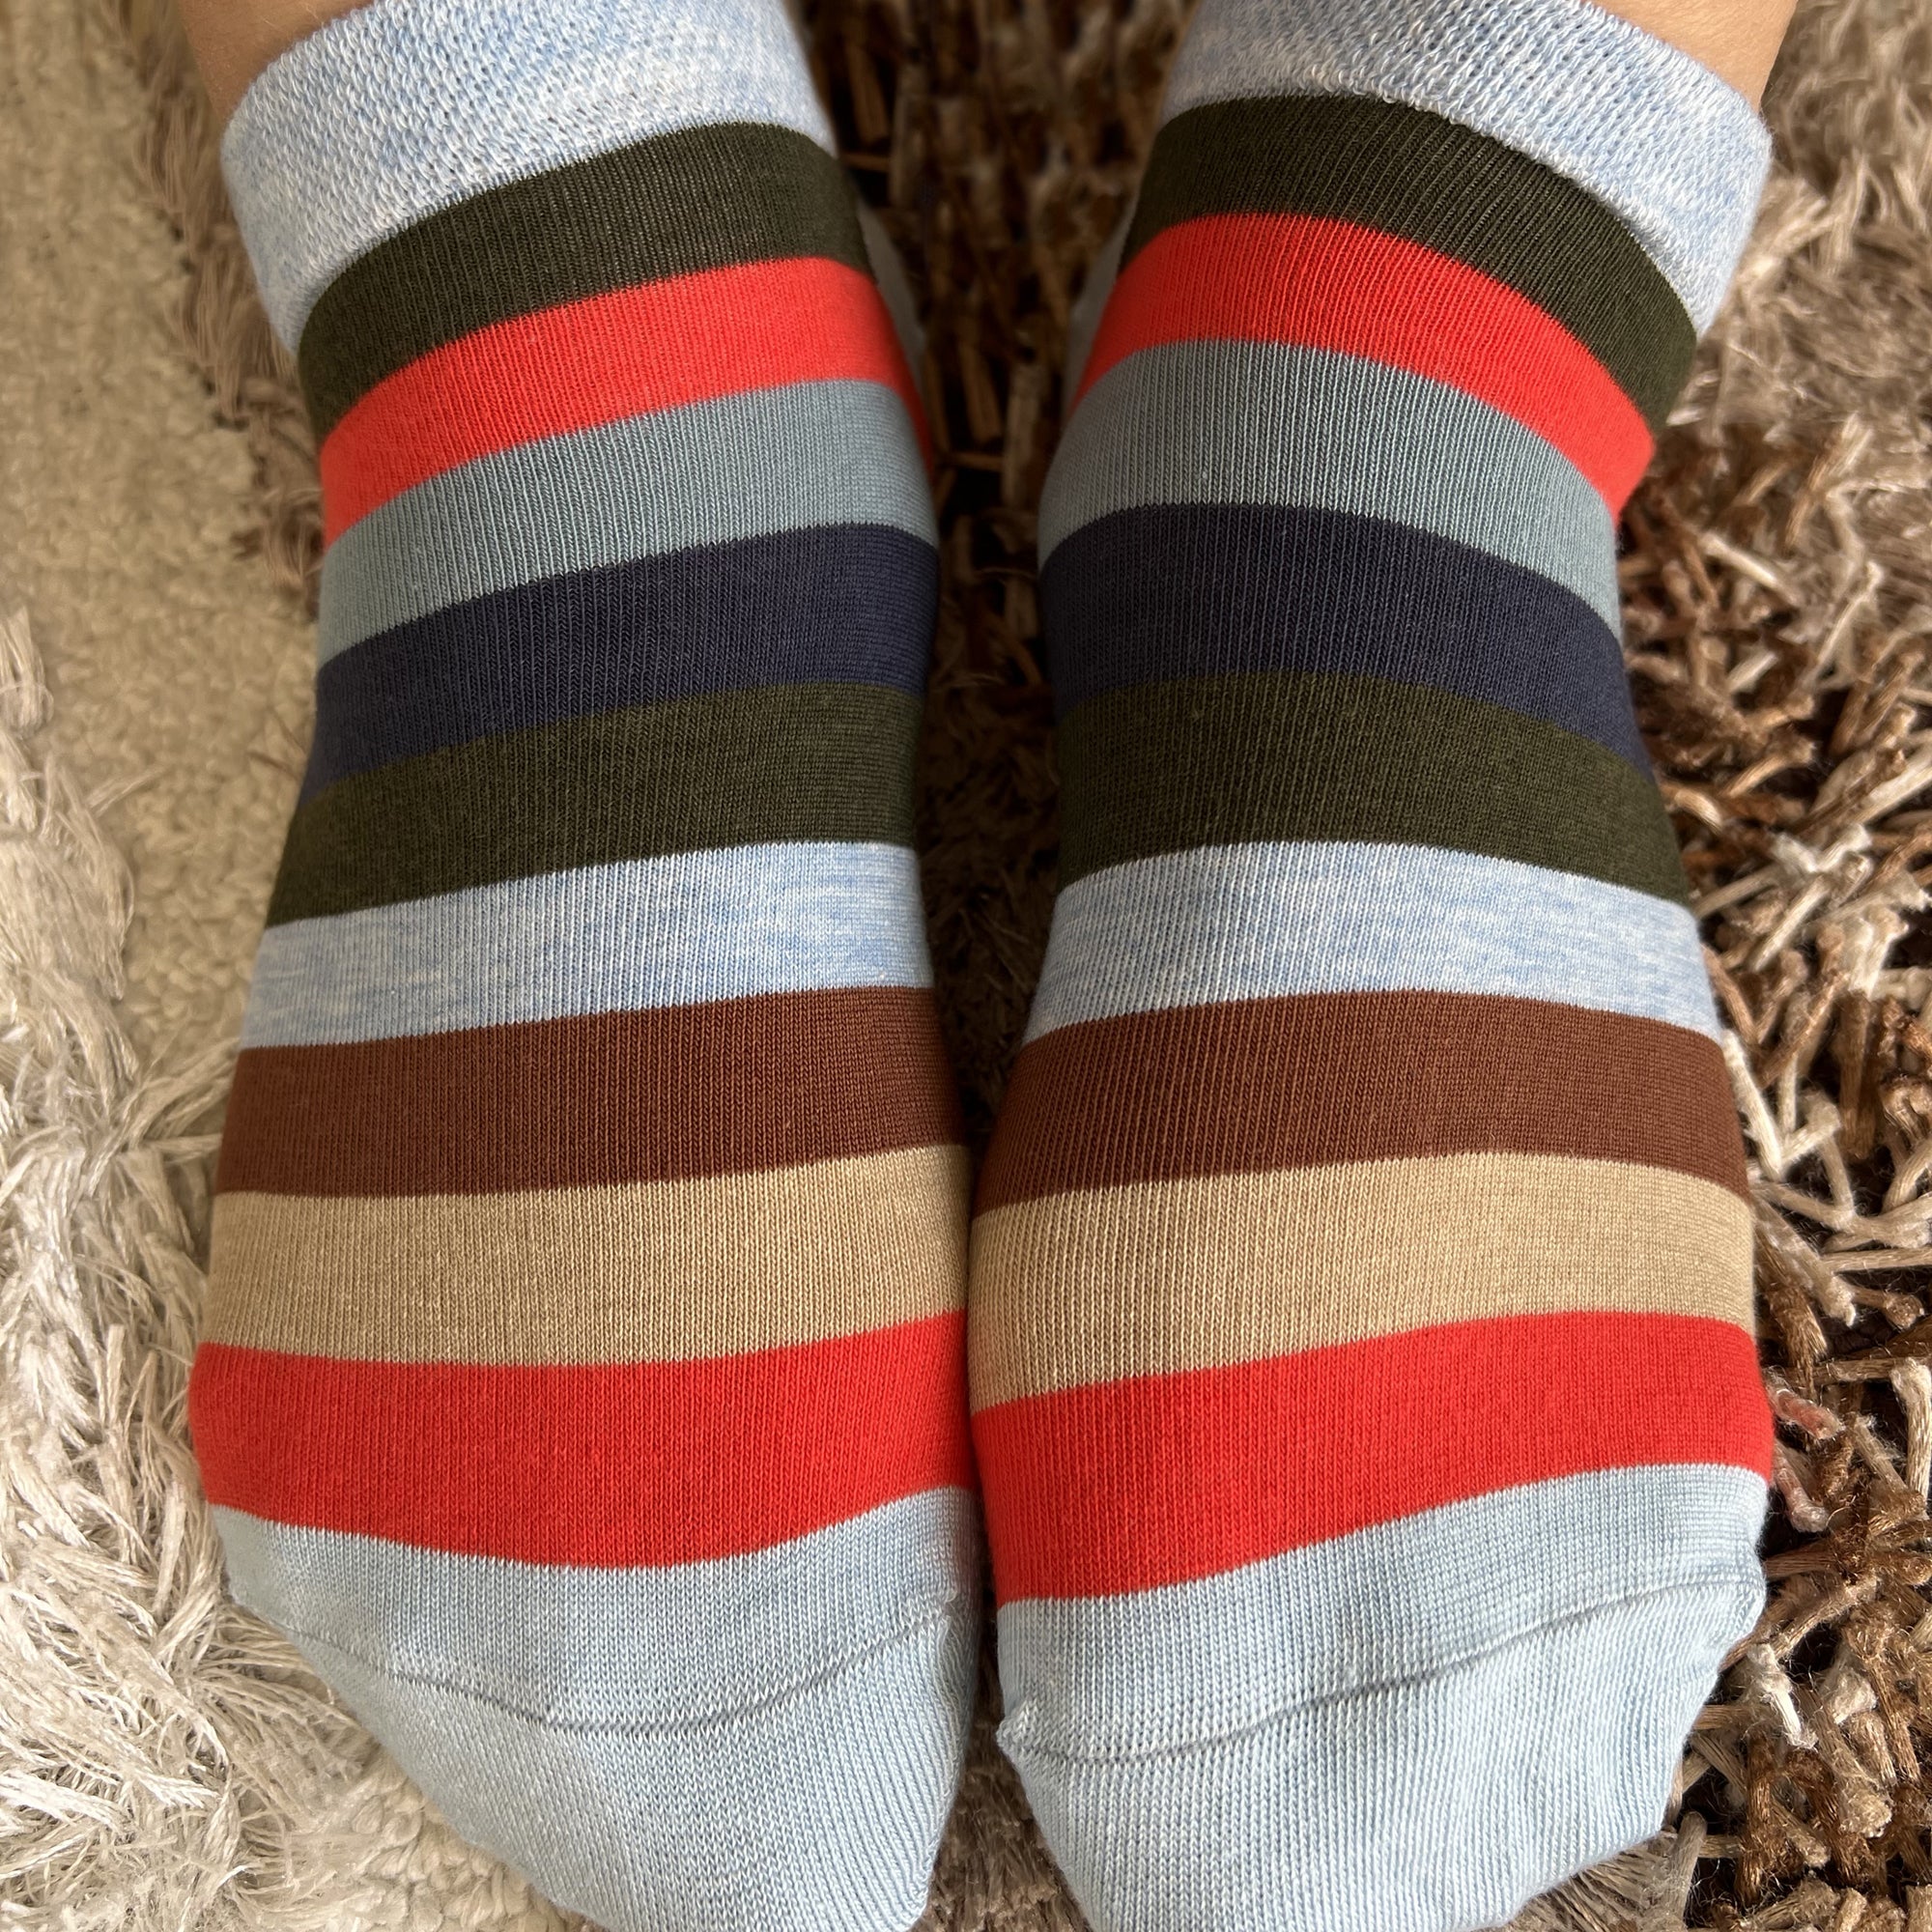 Louluu Stripped Low Cut Socks